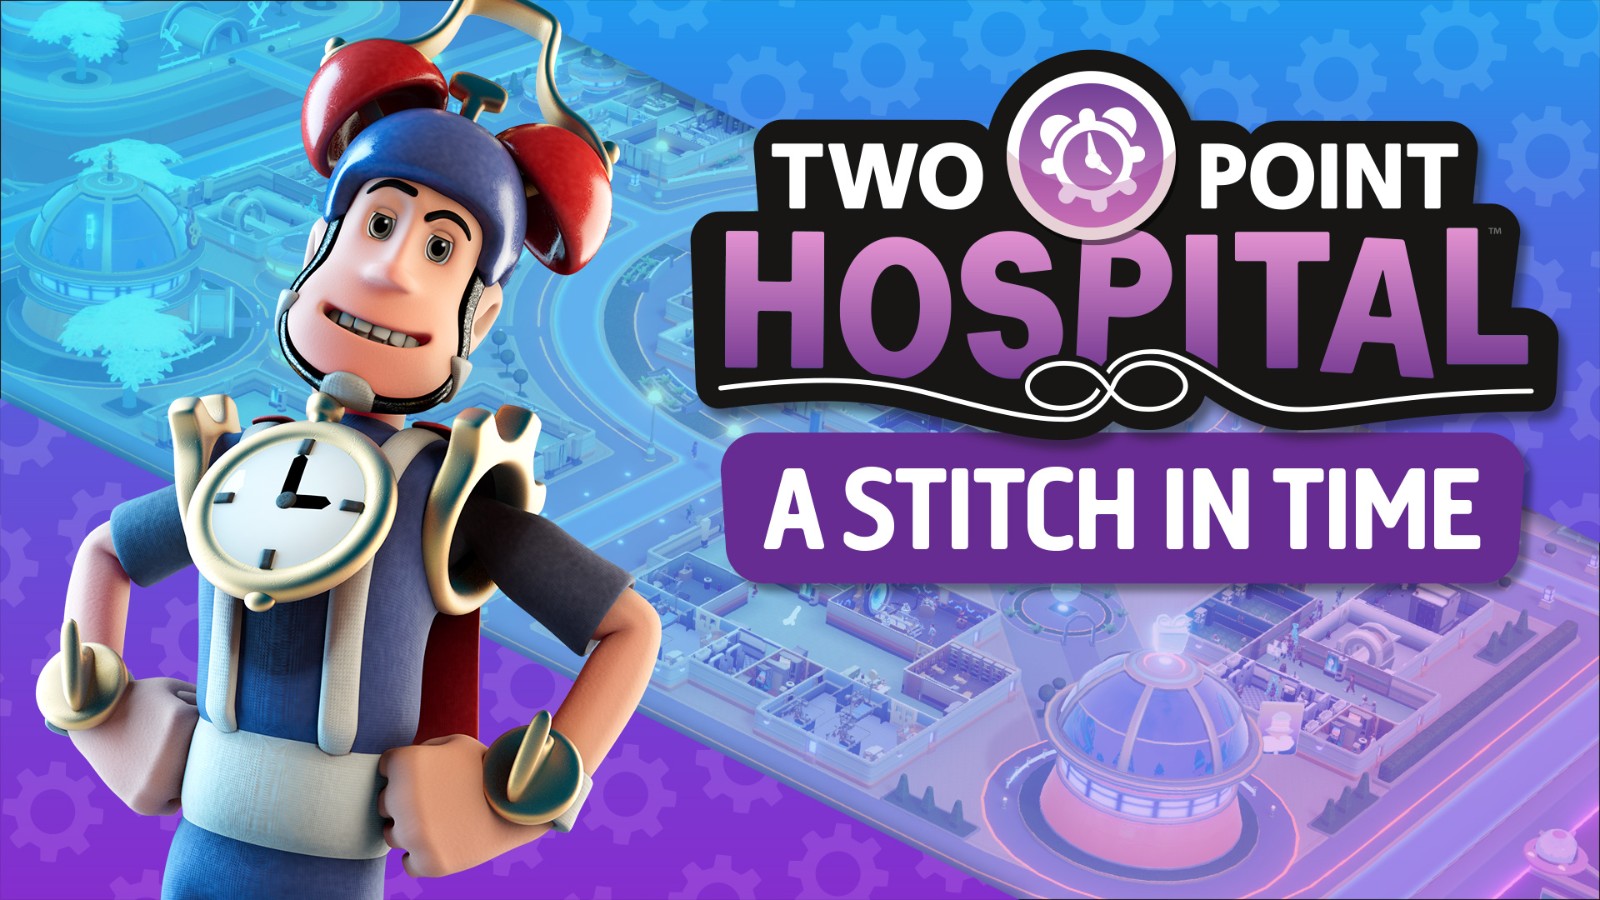 《雙點醫院》新DLC在Steam上推出 來趟時空旅行